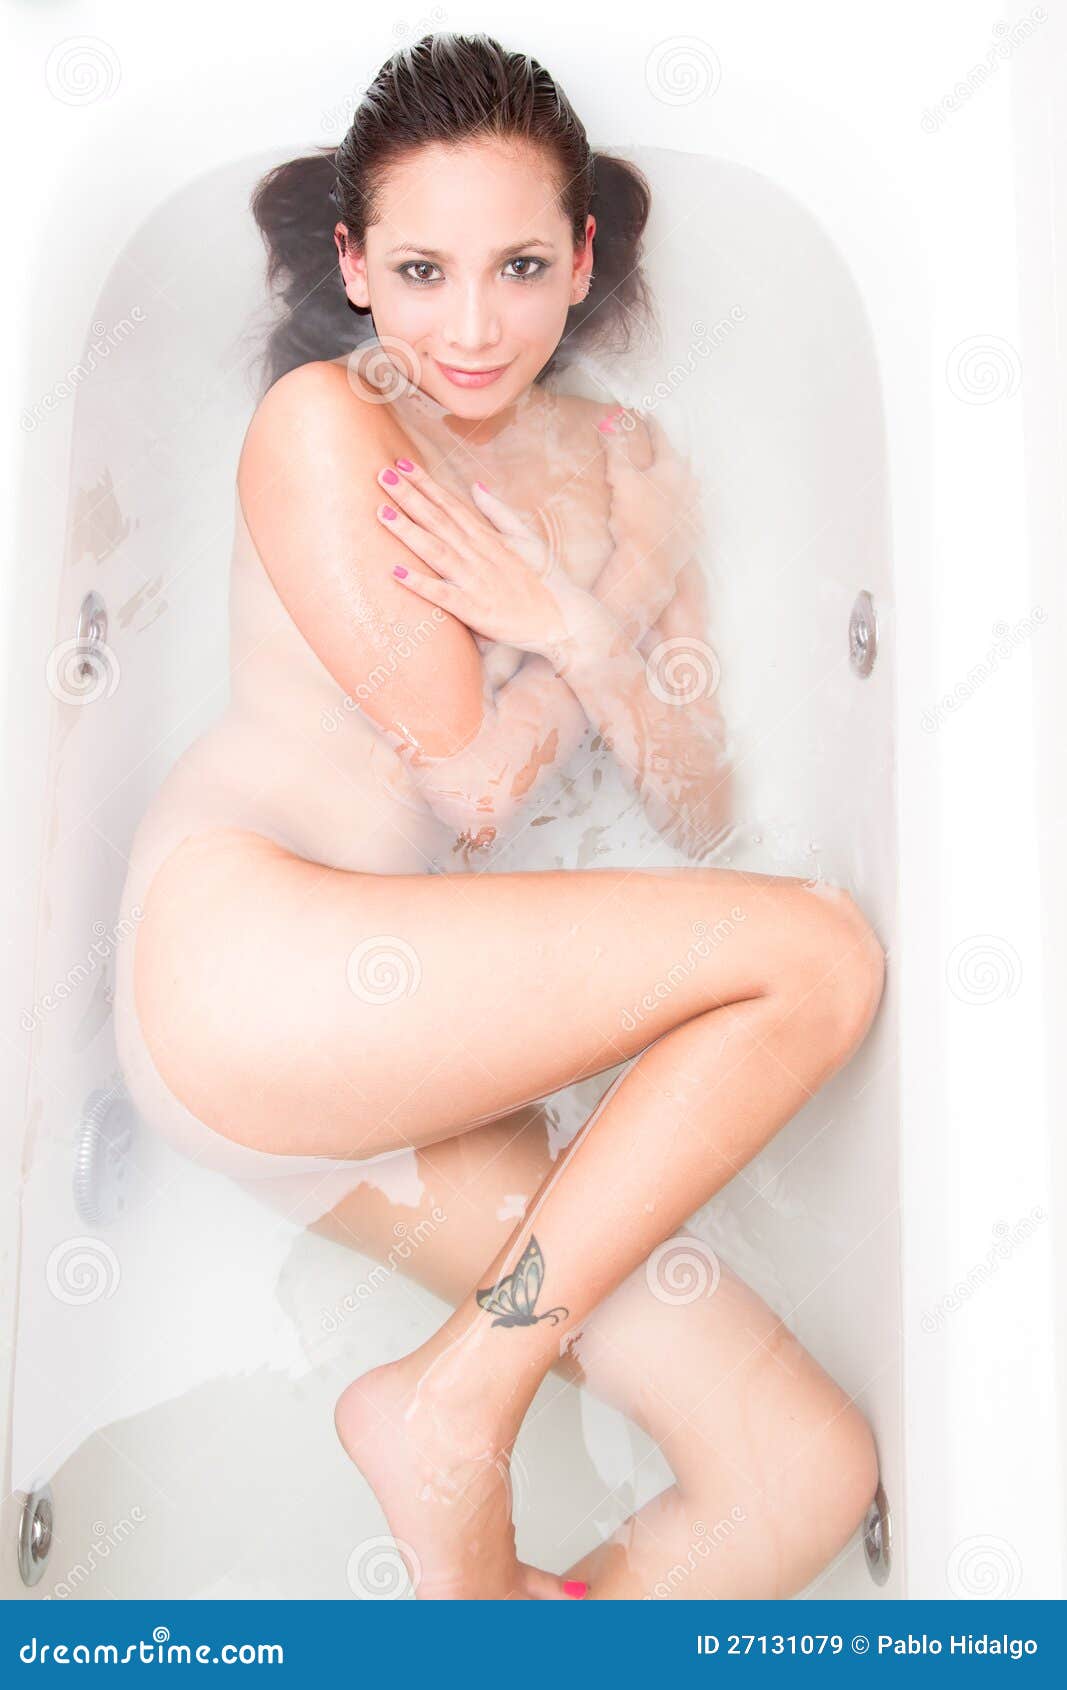 ali ft add photo nude in bath tub